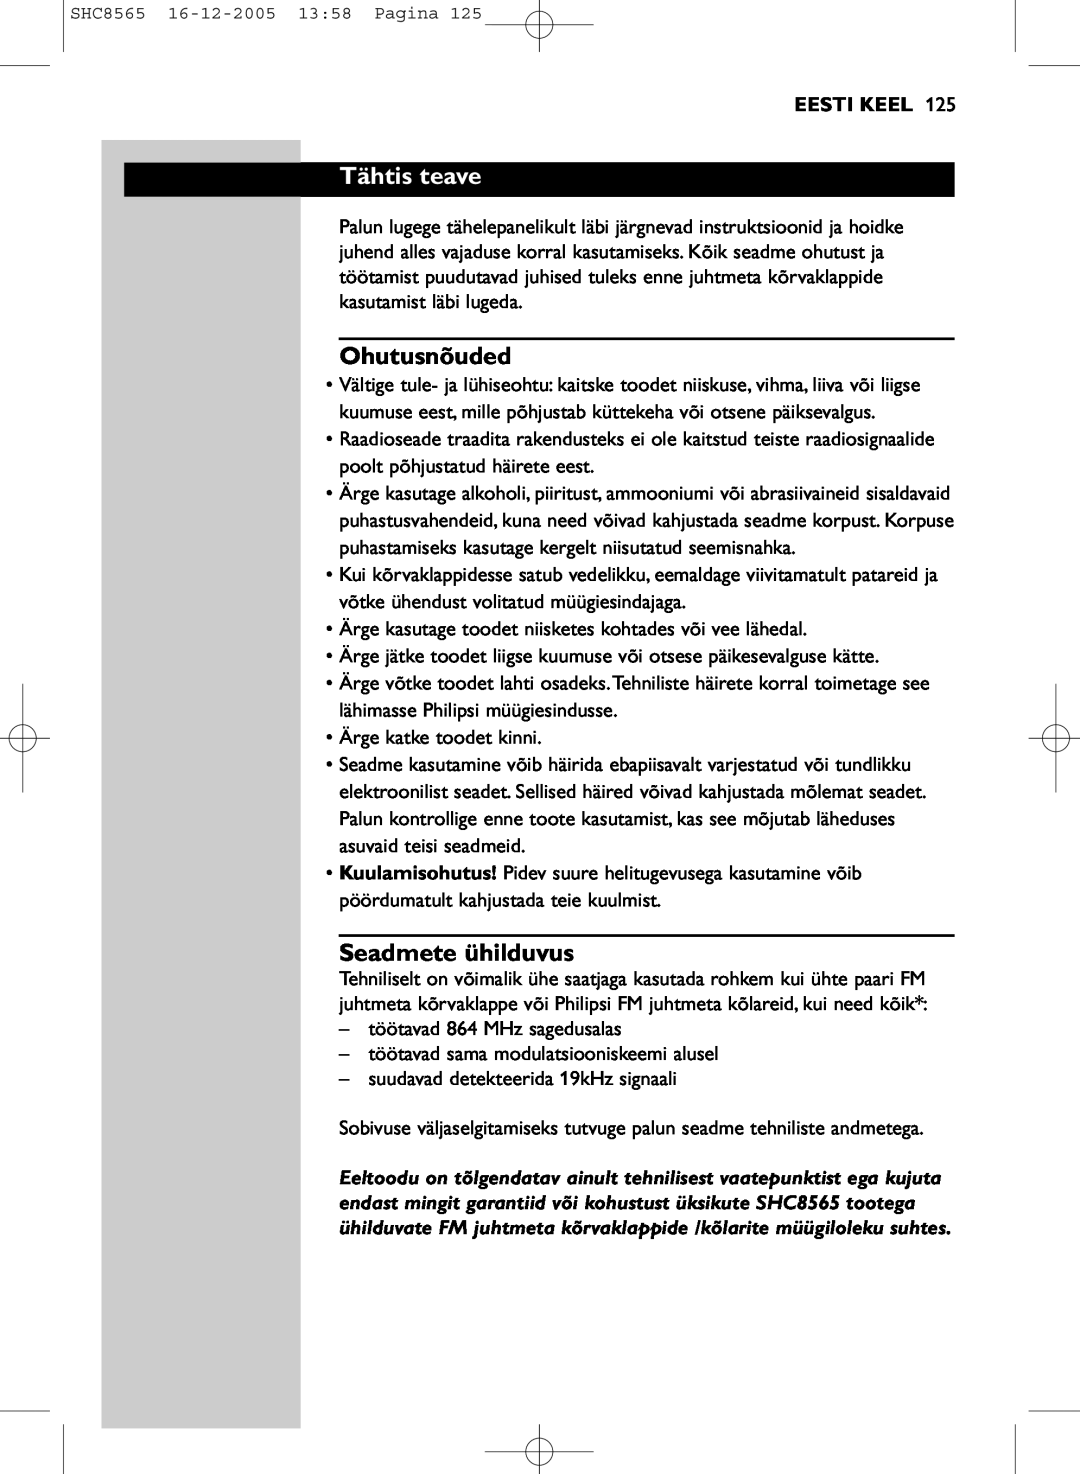 Philips SHC8565 manual Tähtis teave, Ohutusnõuded, Seadmete ühilduvus, Eesti Keel 